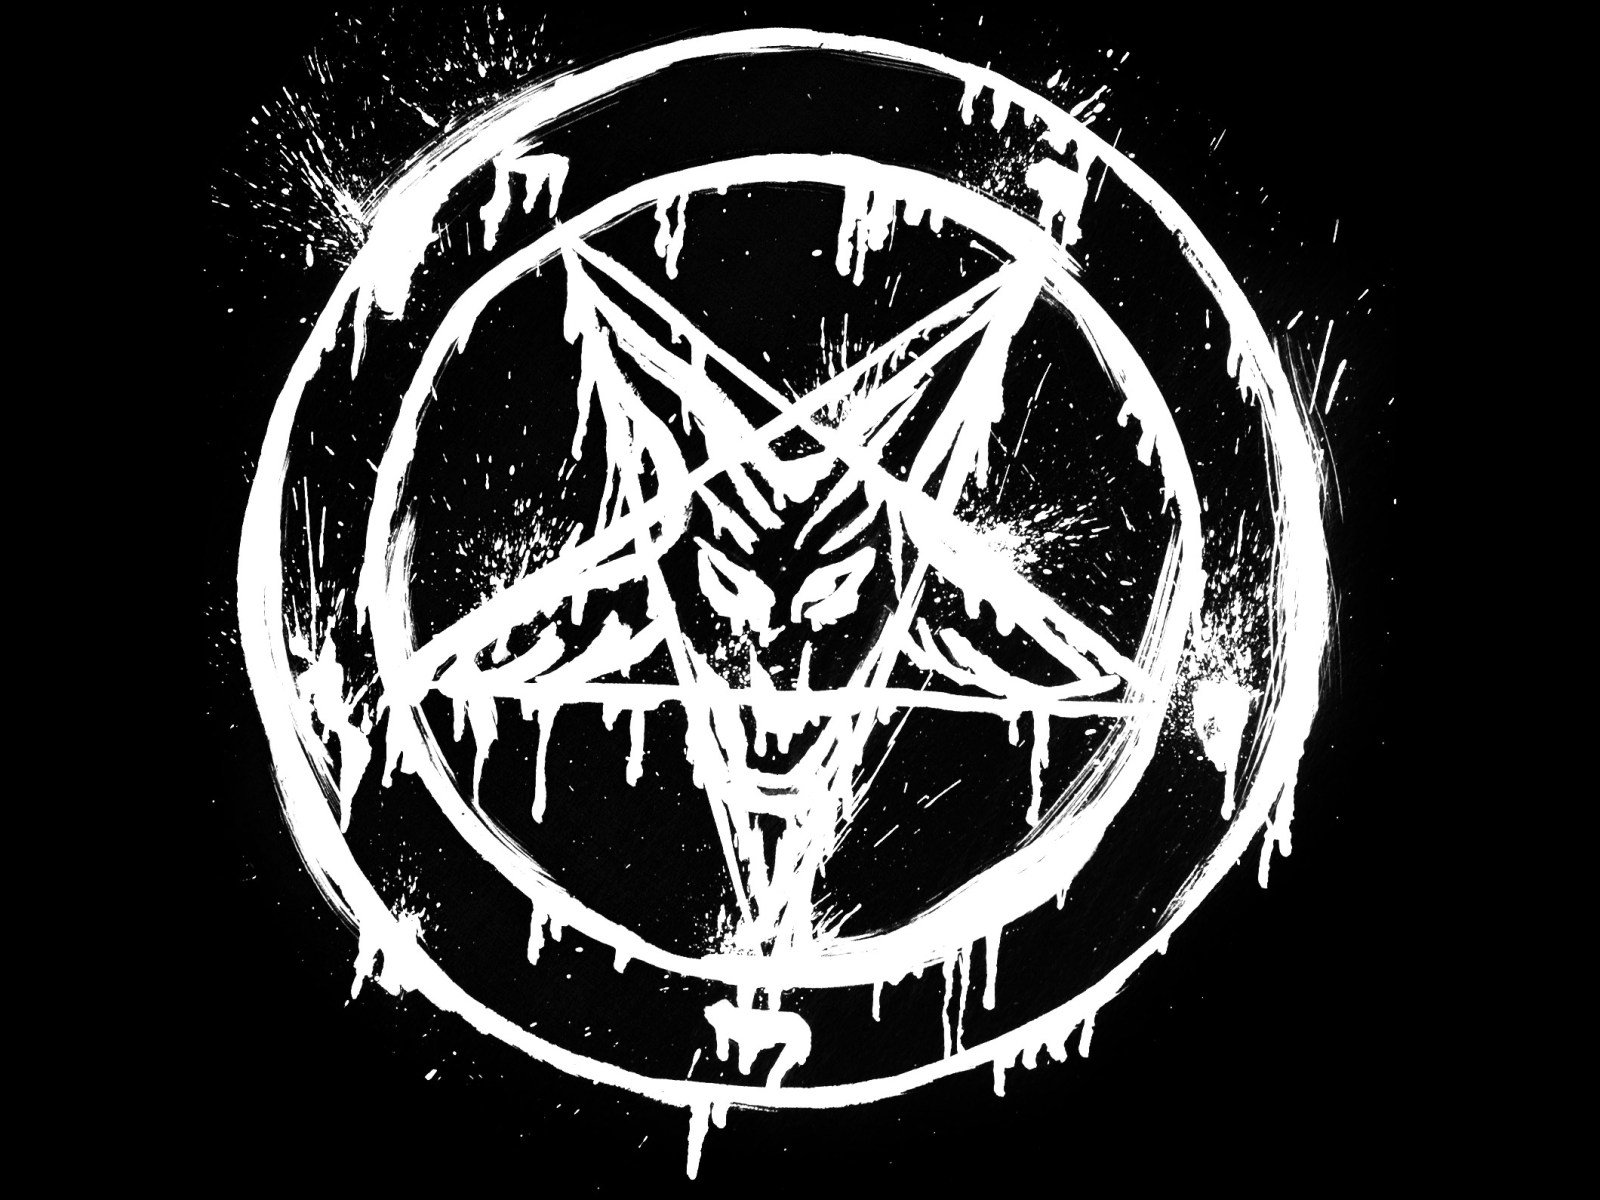 Related Pentacle Wallpaper Pentagram Band Slipknot